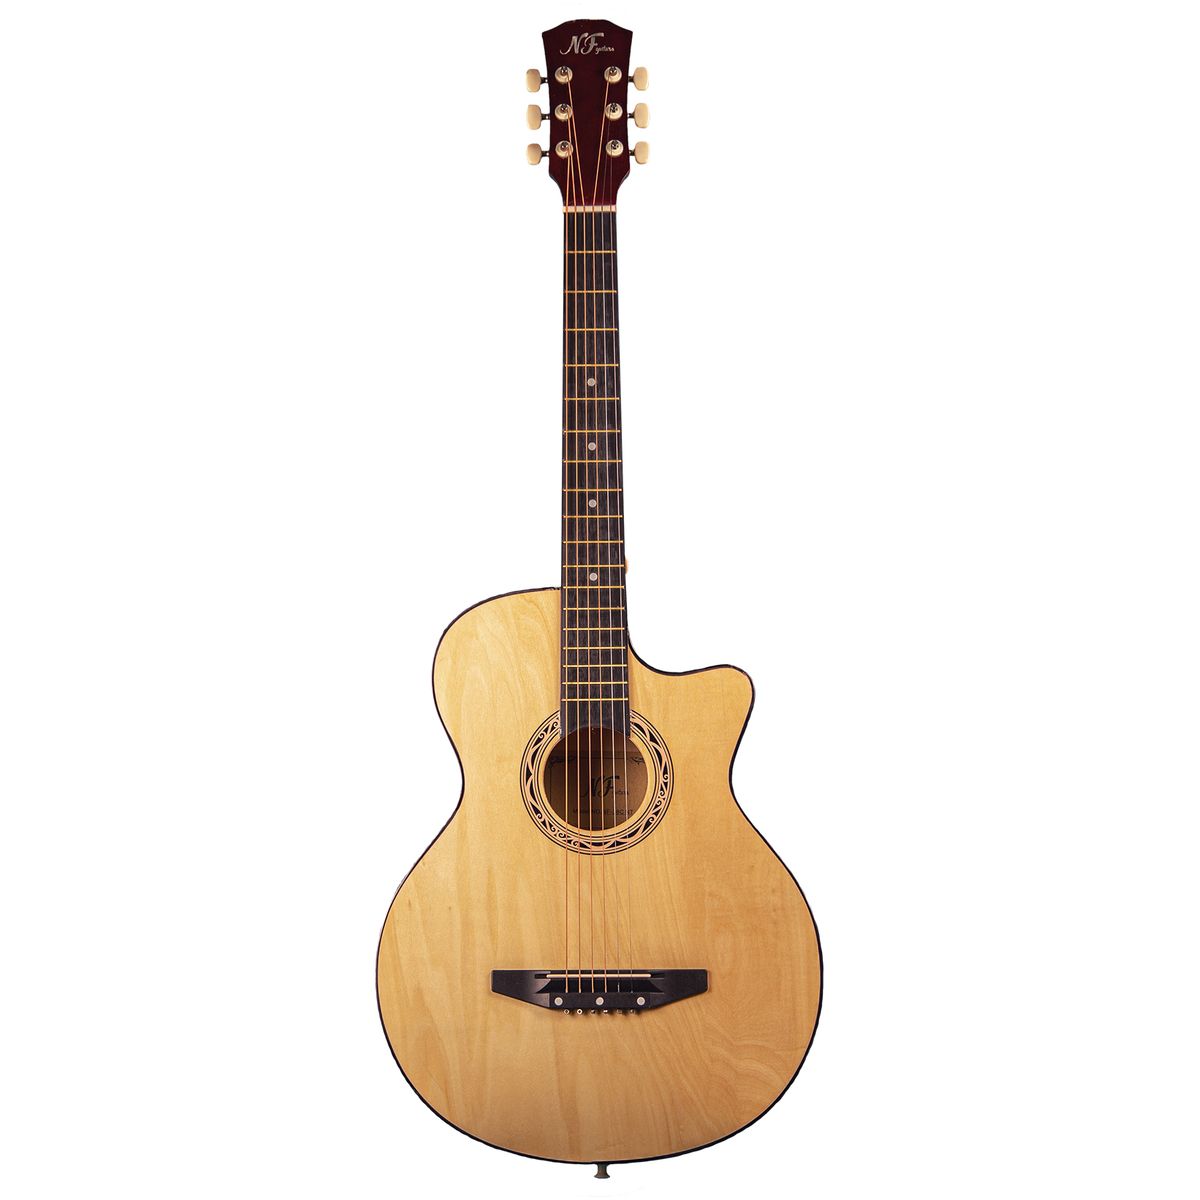 Акустические гитары NF Guitars NF-38C NT гитара акустическая дерево 97см с вырезом